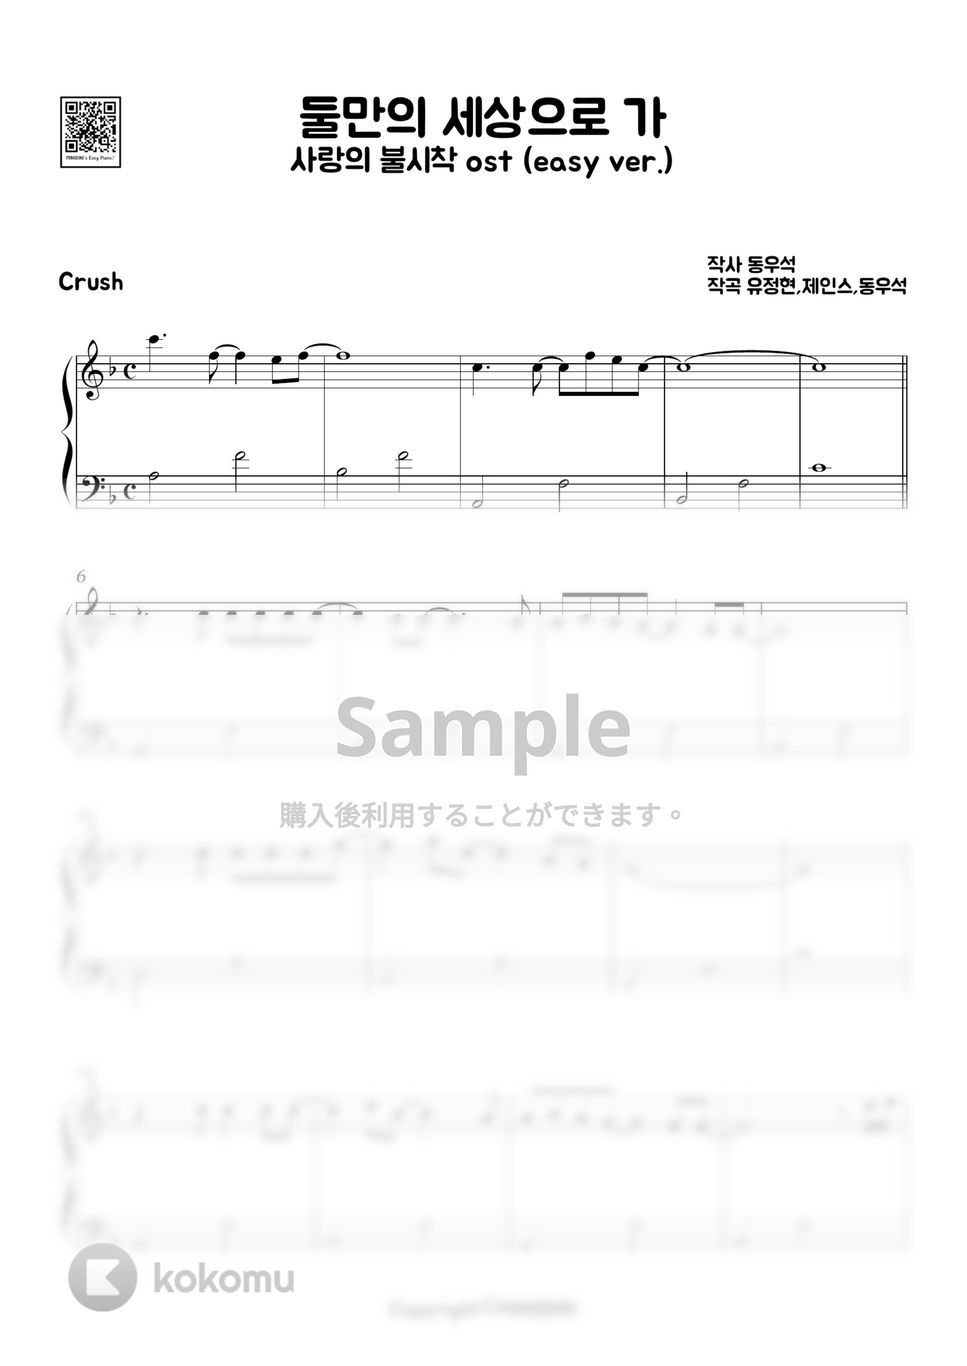 愛の不時着 OST - 二人だけの世界に行く (Easy ver.) by MINIBINI